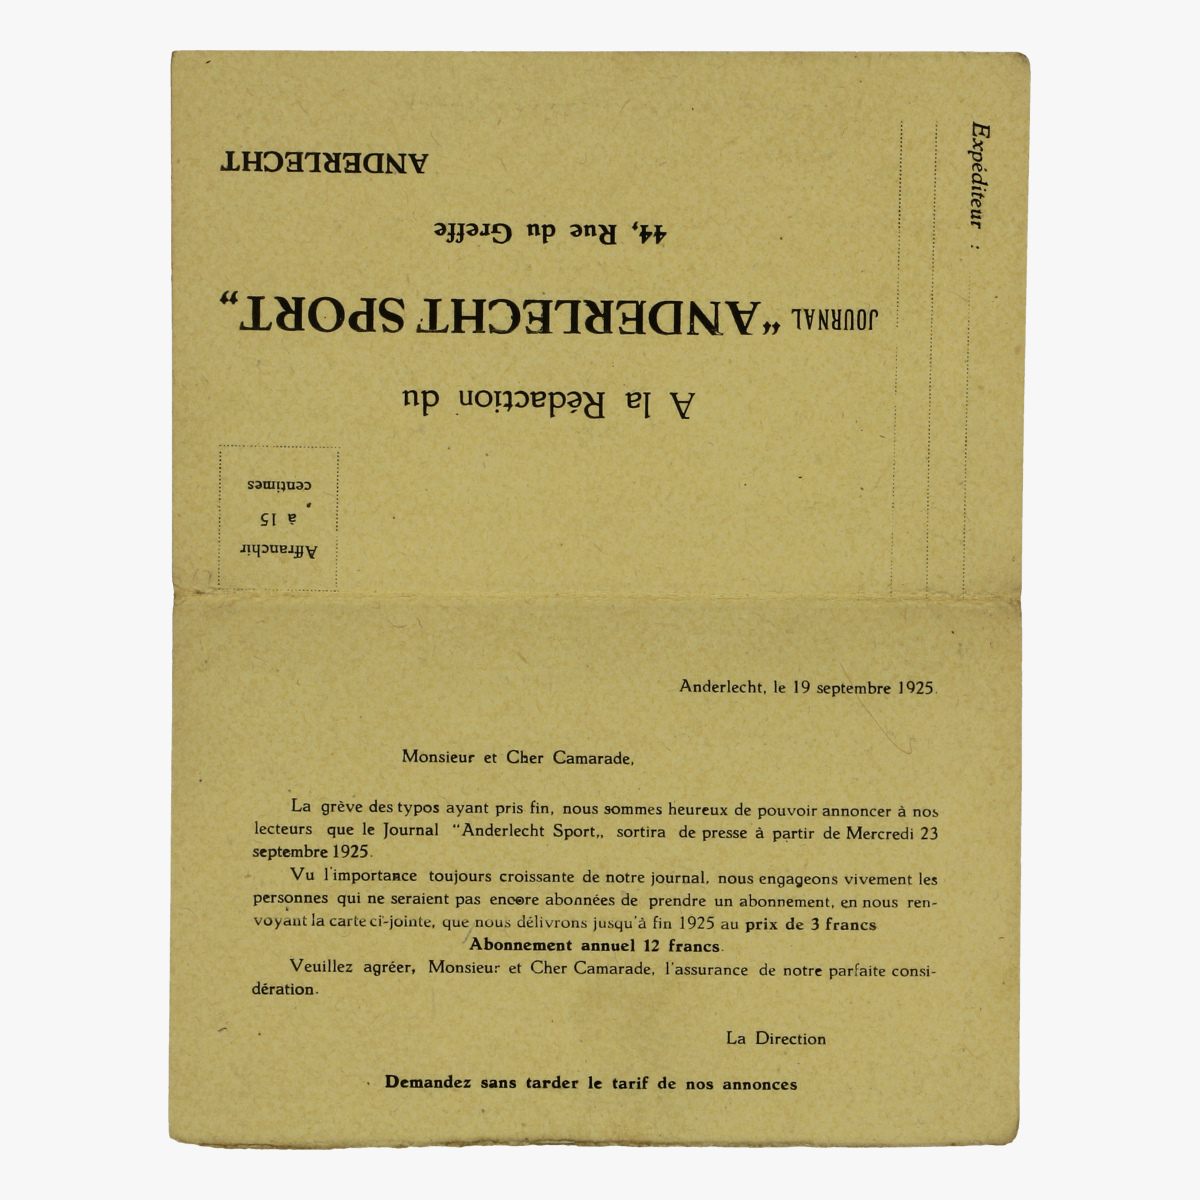 Afbeeldingen van aanvraag formulier voor dagblad anderlechtsport 1925